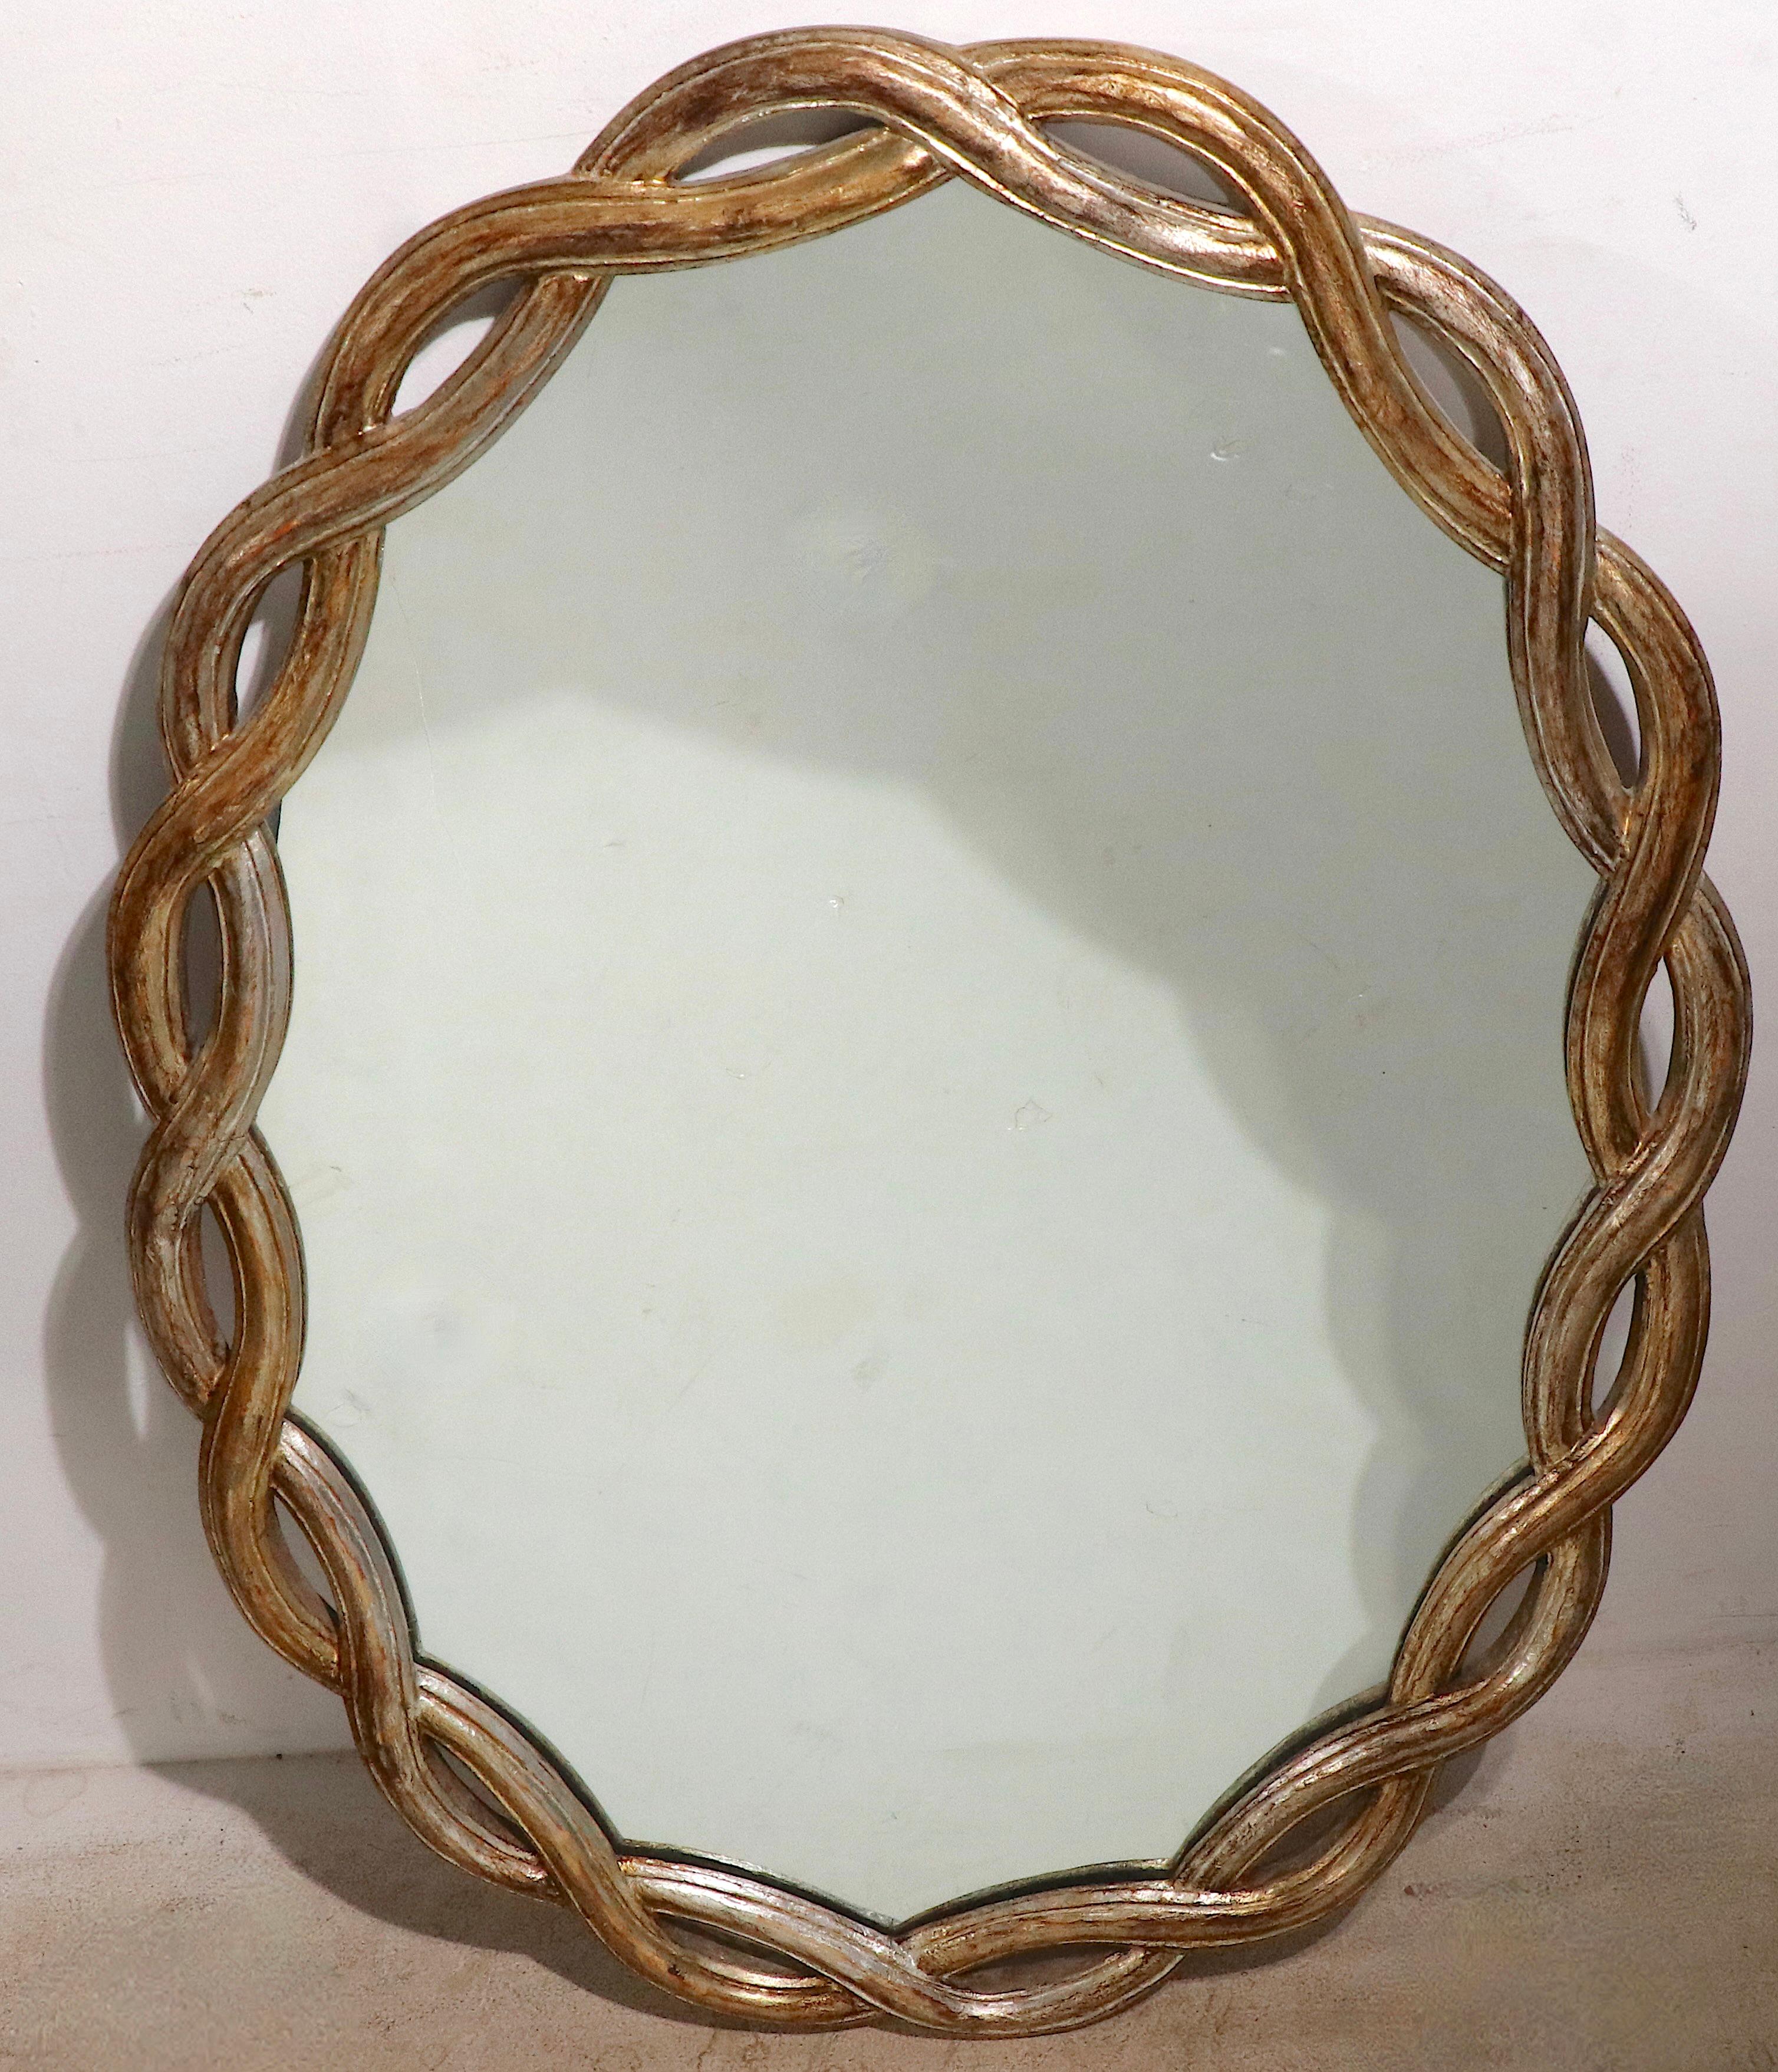 Superschicker silbervergoldeter Spiegel aus handgeschnitztem Holz und Glas. Der Spiegel hat einen Rahmen mit durchbrochenem Flechtmuster, der die helle und saubere Spiegelmitte umgibt. Dieses Exemplar ist in einem sehr guten, sauberen, originalen,